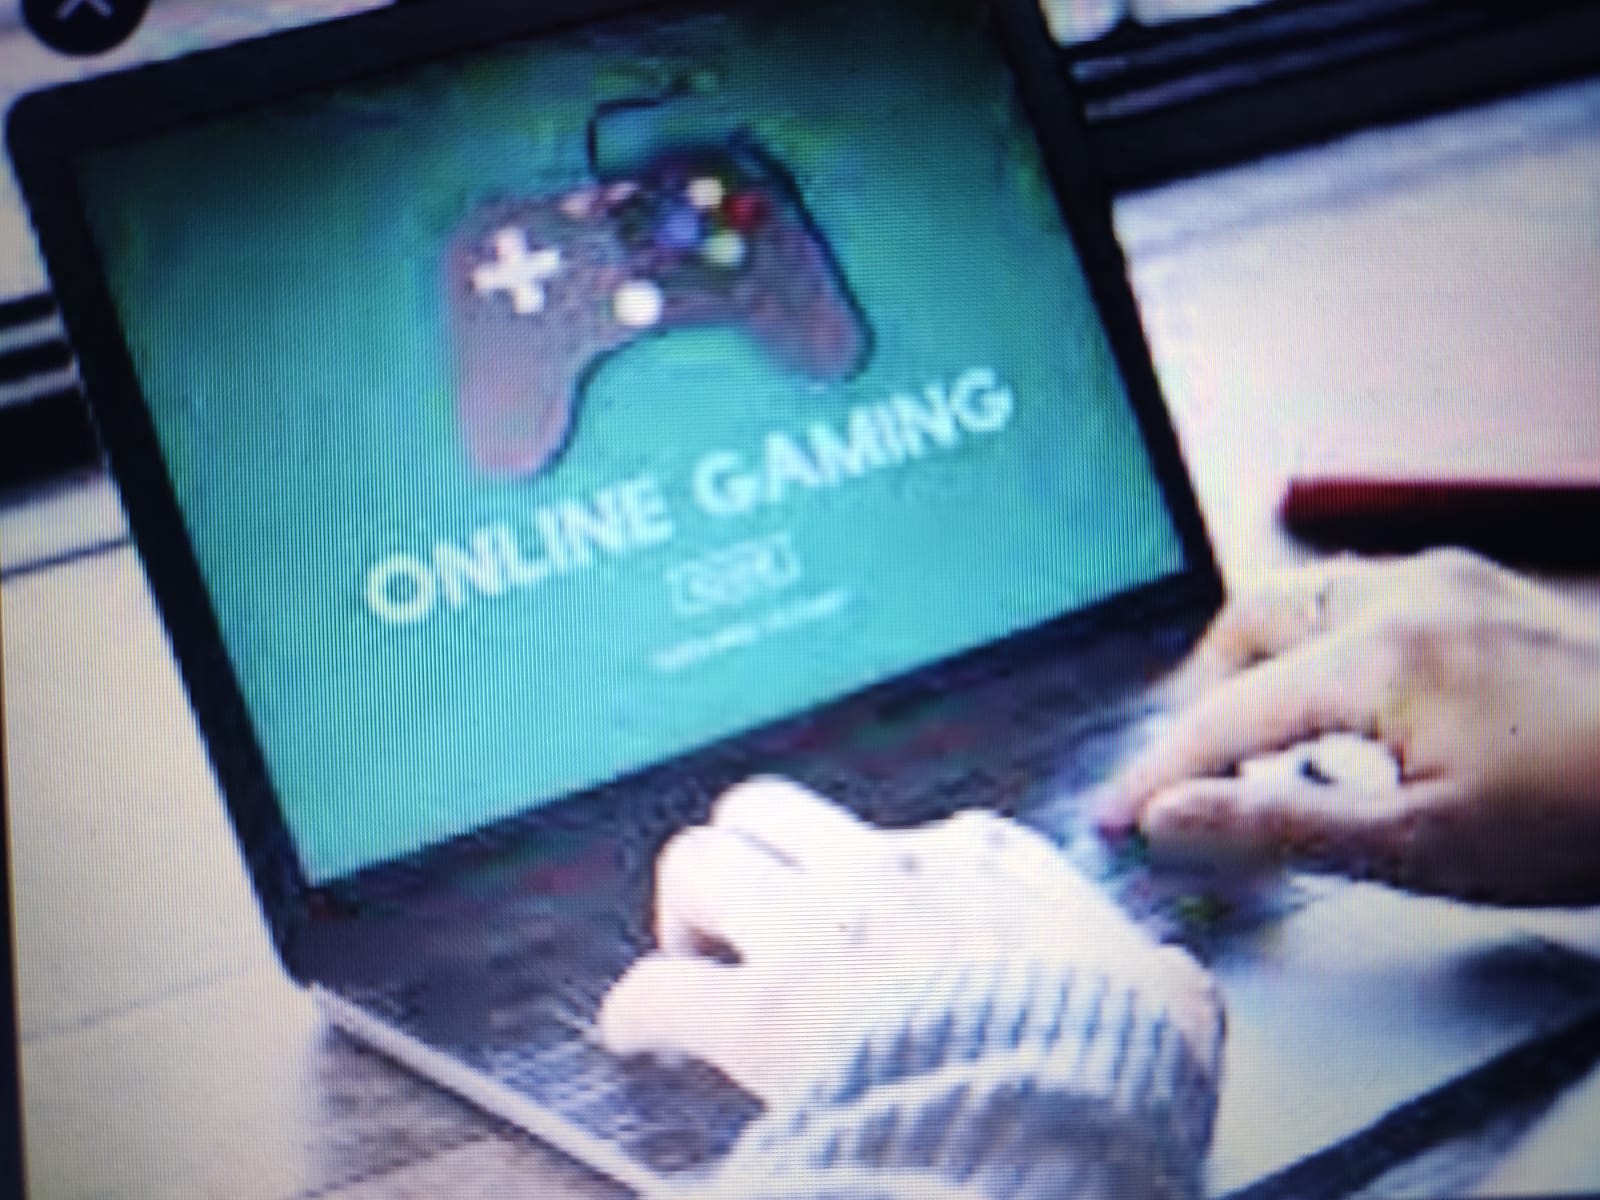 आनलाइन गेमिंग की लत से निपटने के लिये शिक्षा मंत्रालय का माता पिता, शिक्षकों के लिये परामर्श